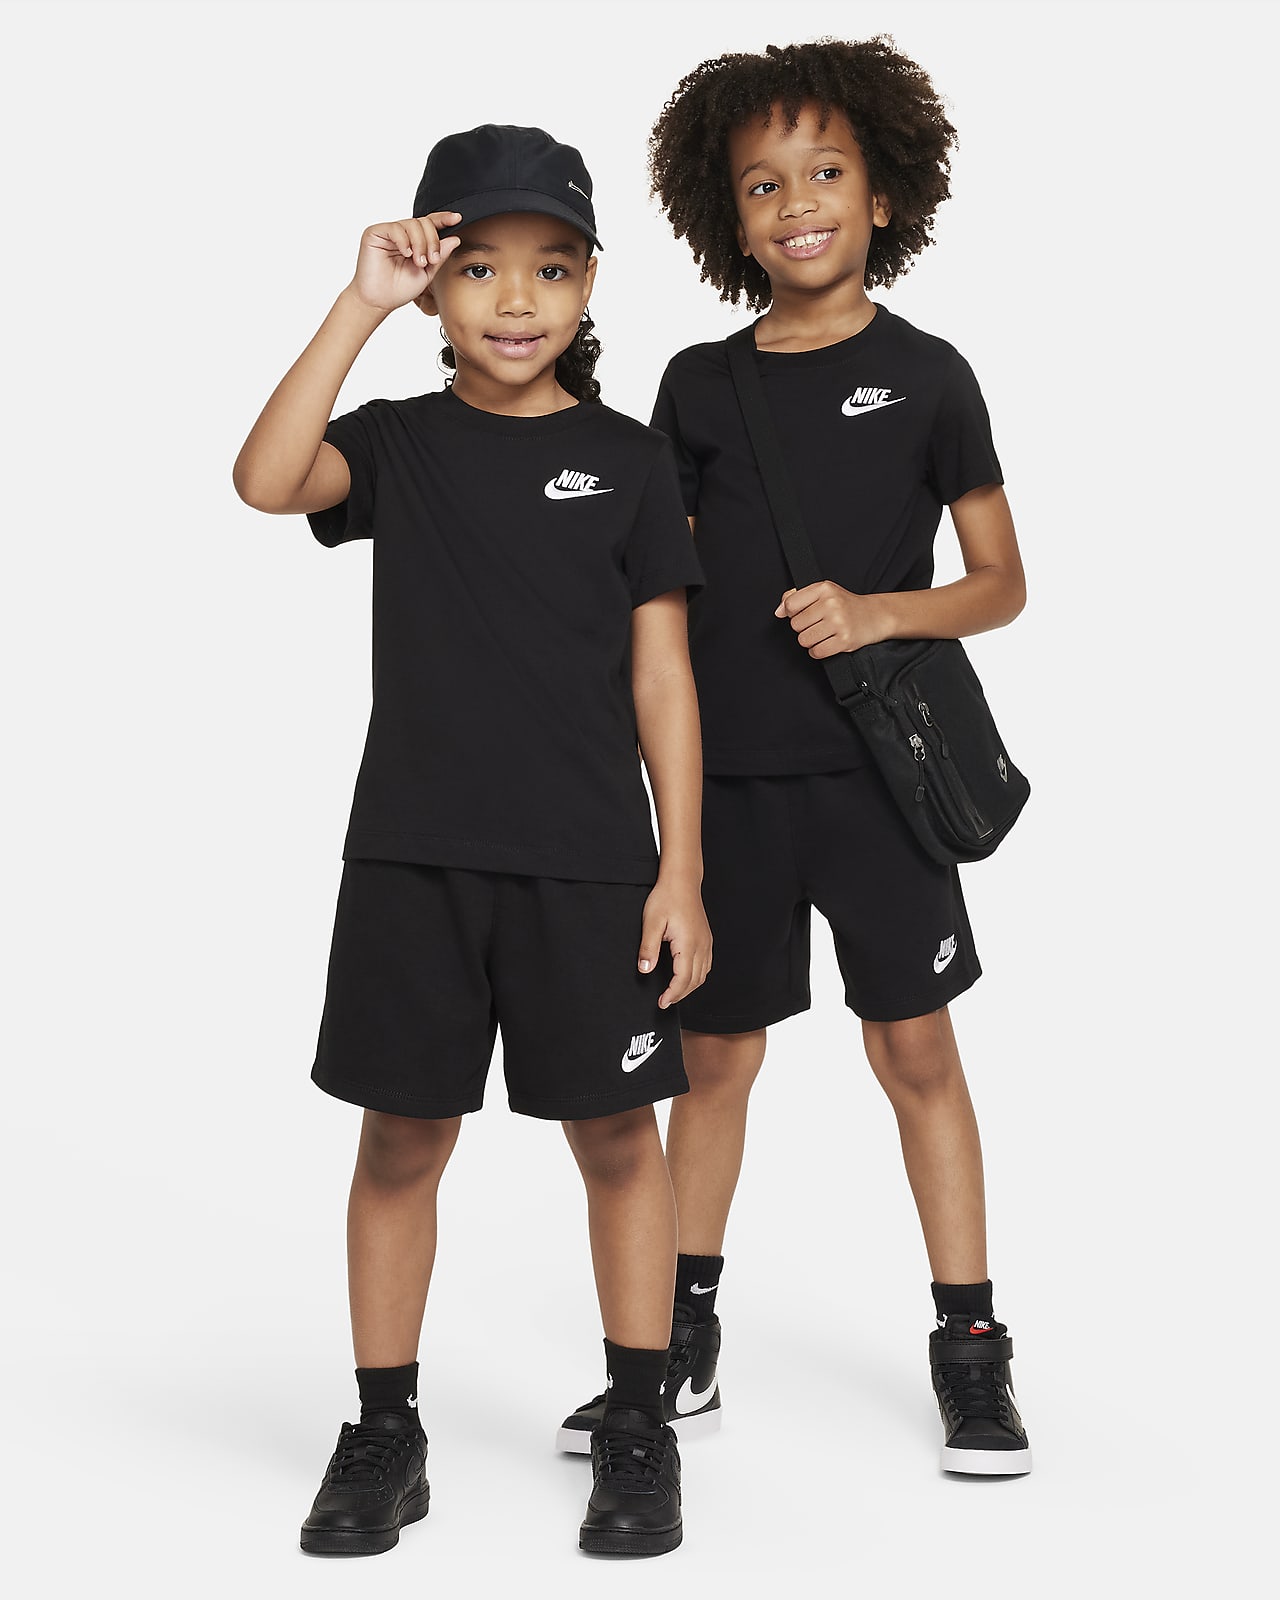 【ナイキ公式】クラブ リトルキッズ ニット ショートパンツ セットアップ ブラック 5 Nike CLUB Little Kids' KNIT Shorts Set